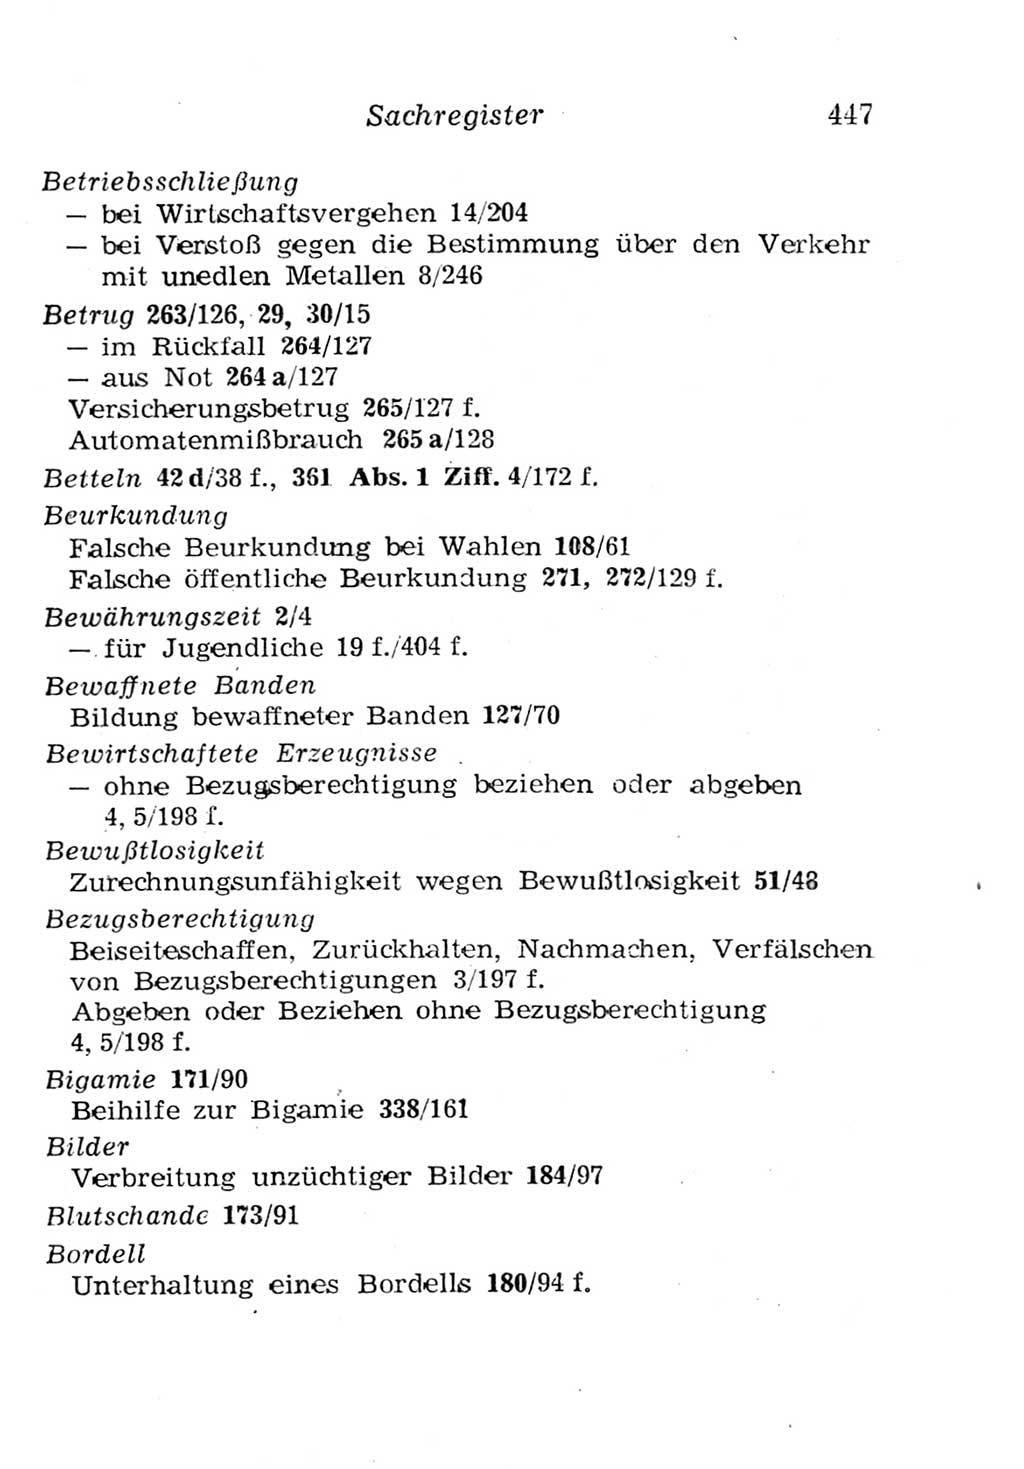 Strafgesetzbuch (StGB) und andere Strafgesetze [Deutsche Demokratische Republik (DDR)] 1957, Seite 447 (StGB Strafges. DDR 1957, S. 447)